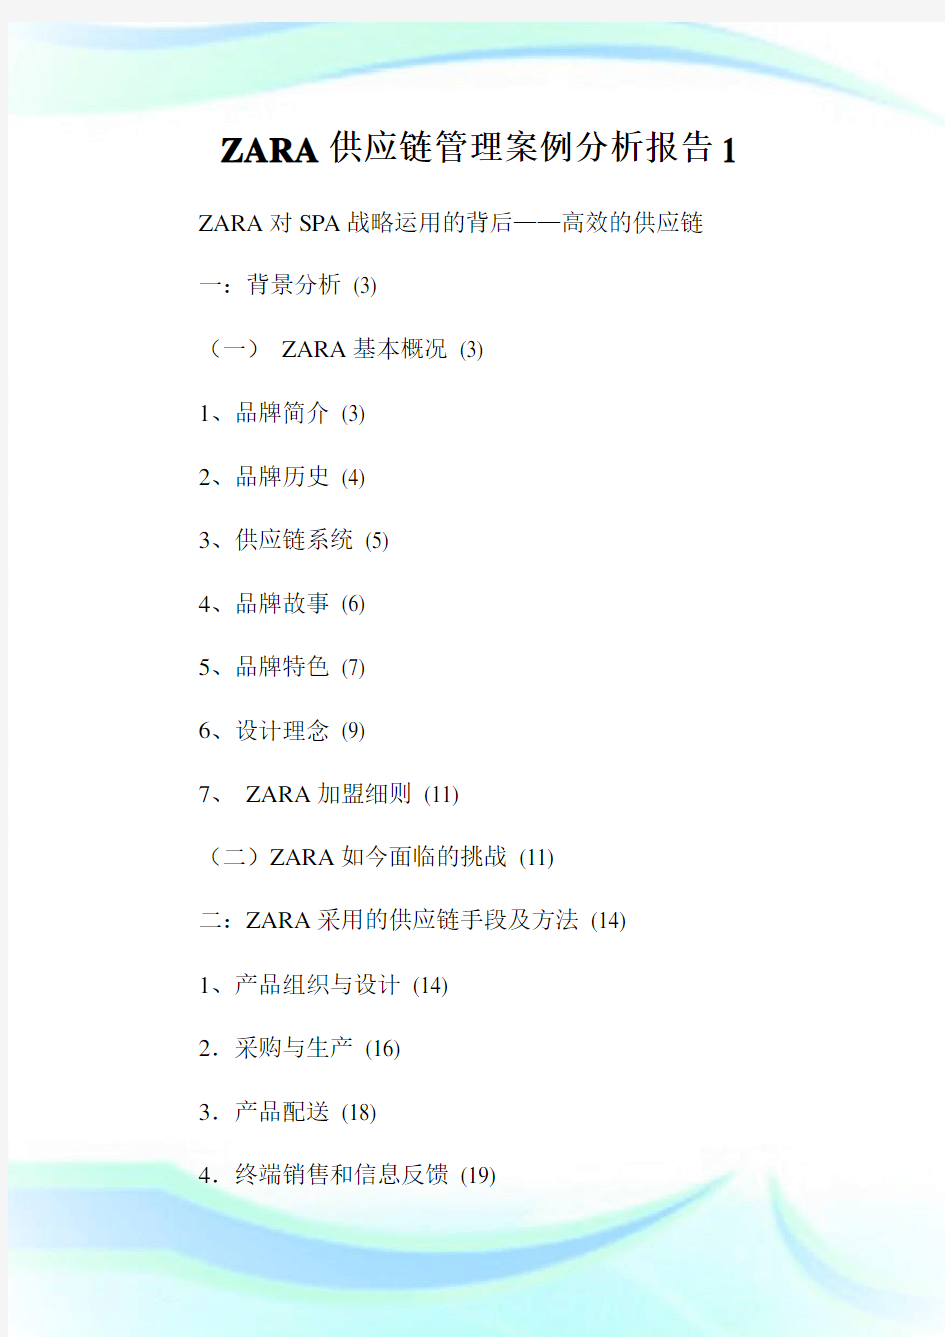 ZARA供应链管理案例分析报告1.doc